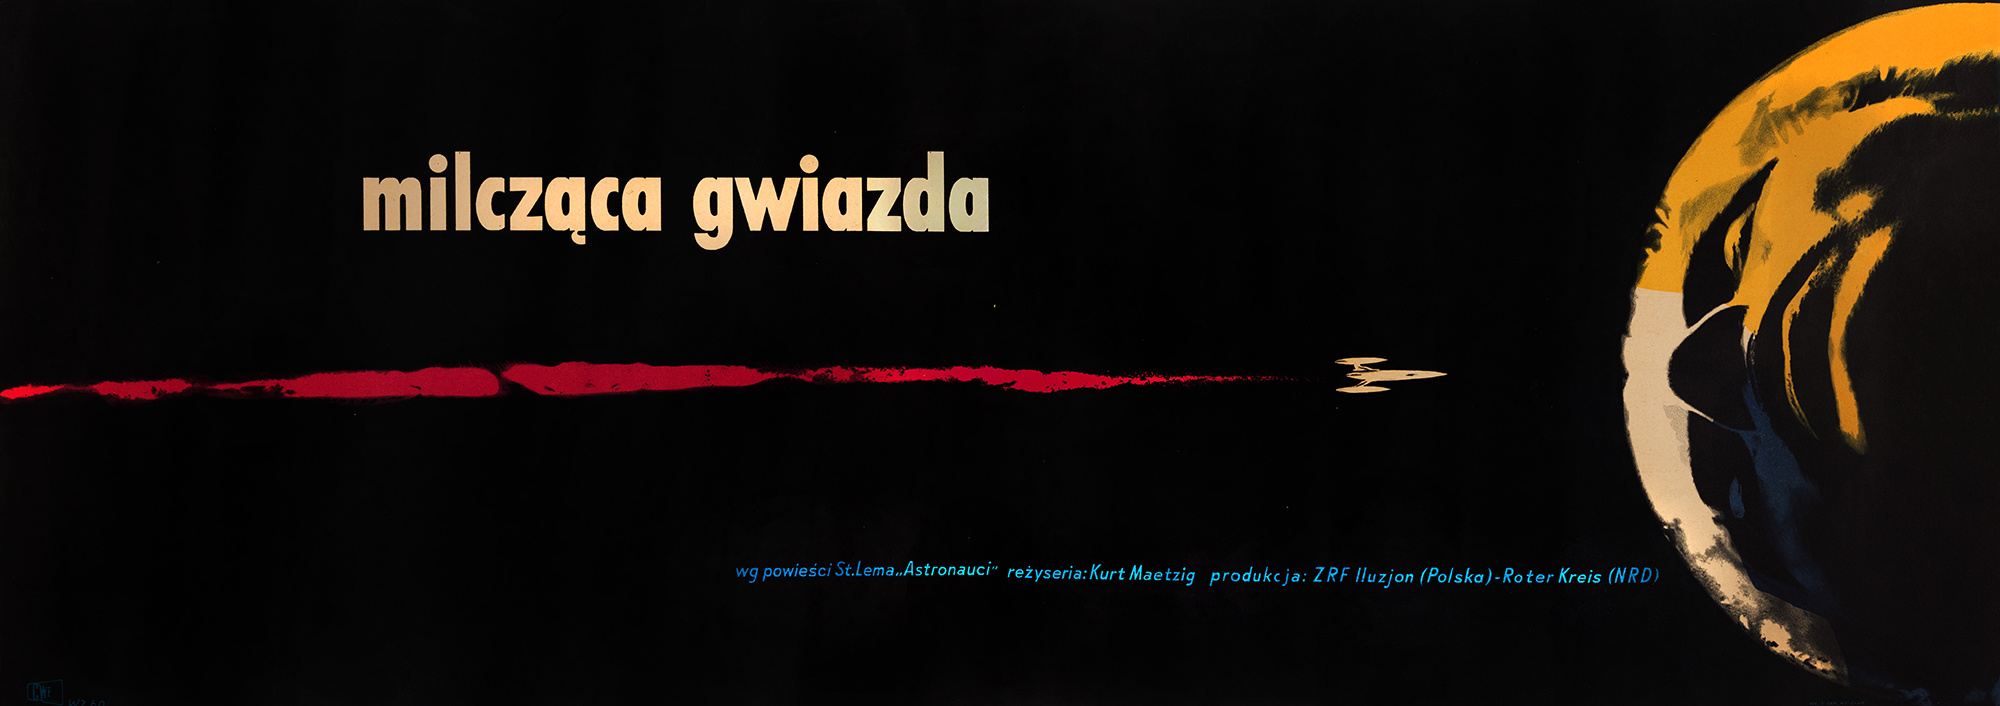 Wojciech Zamecznik: Silent Star (1960)  Filmplakat 